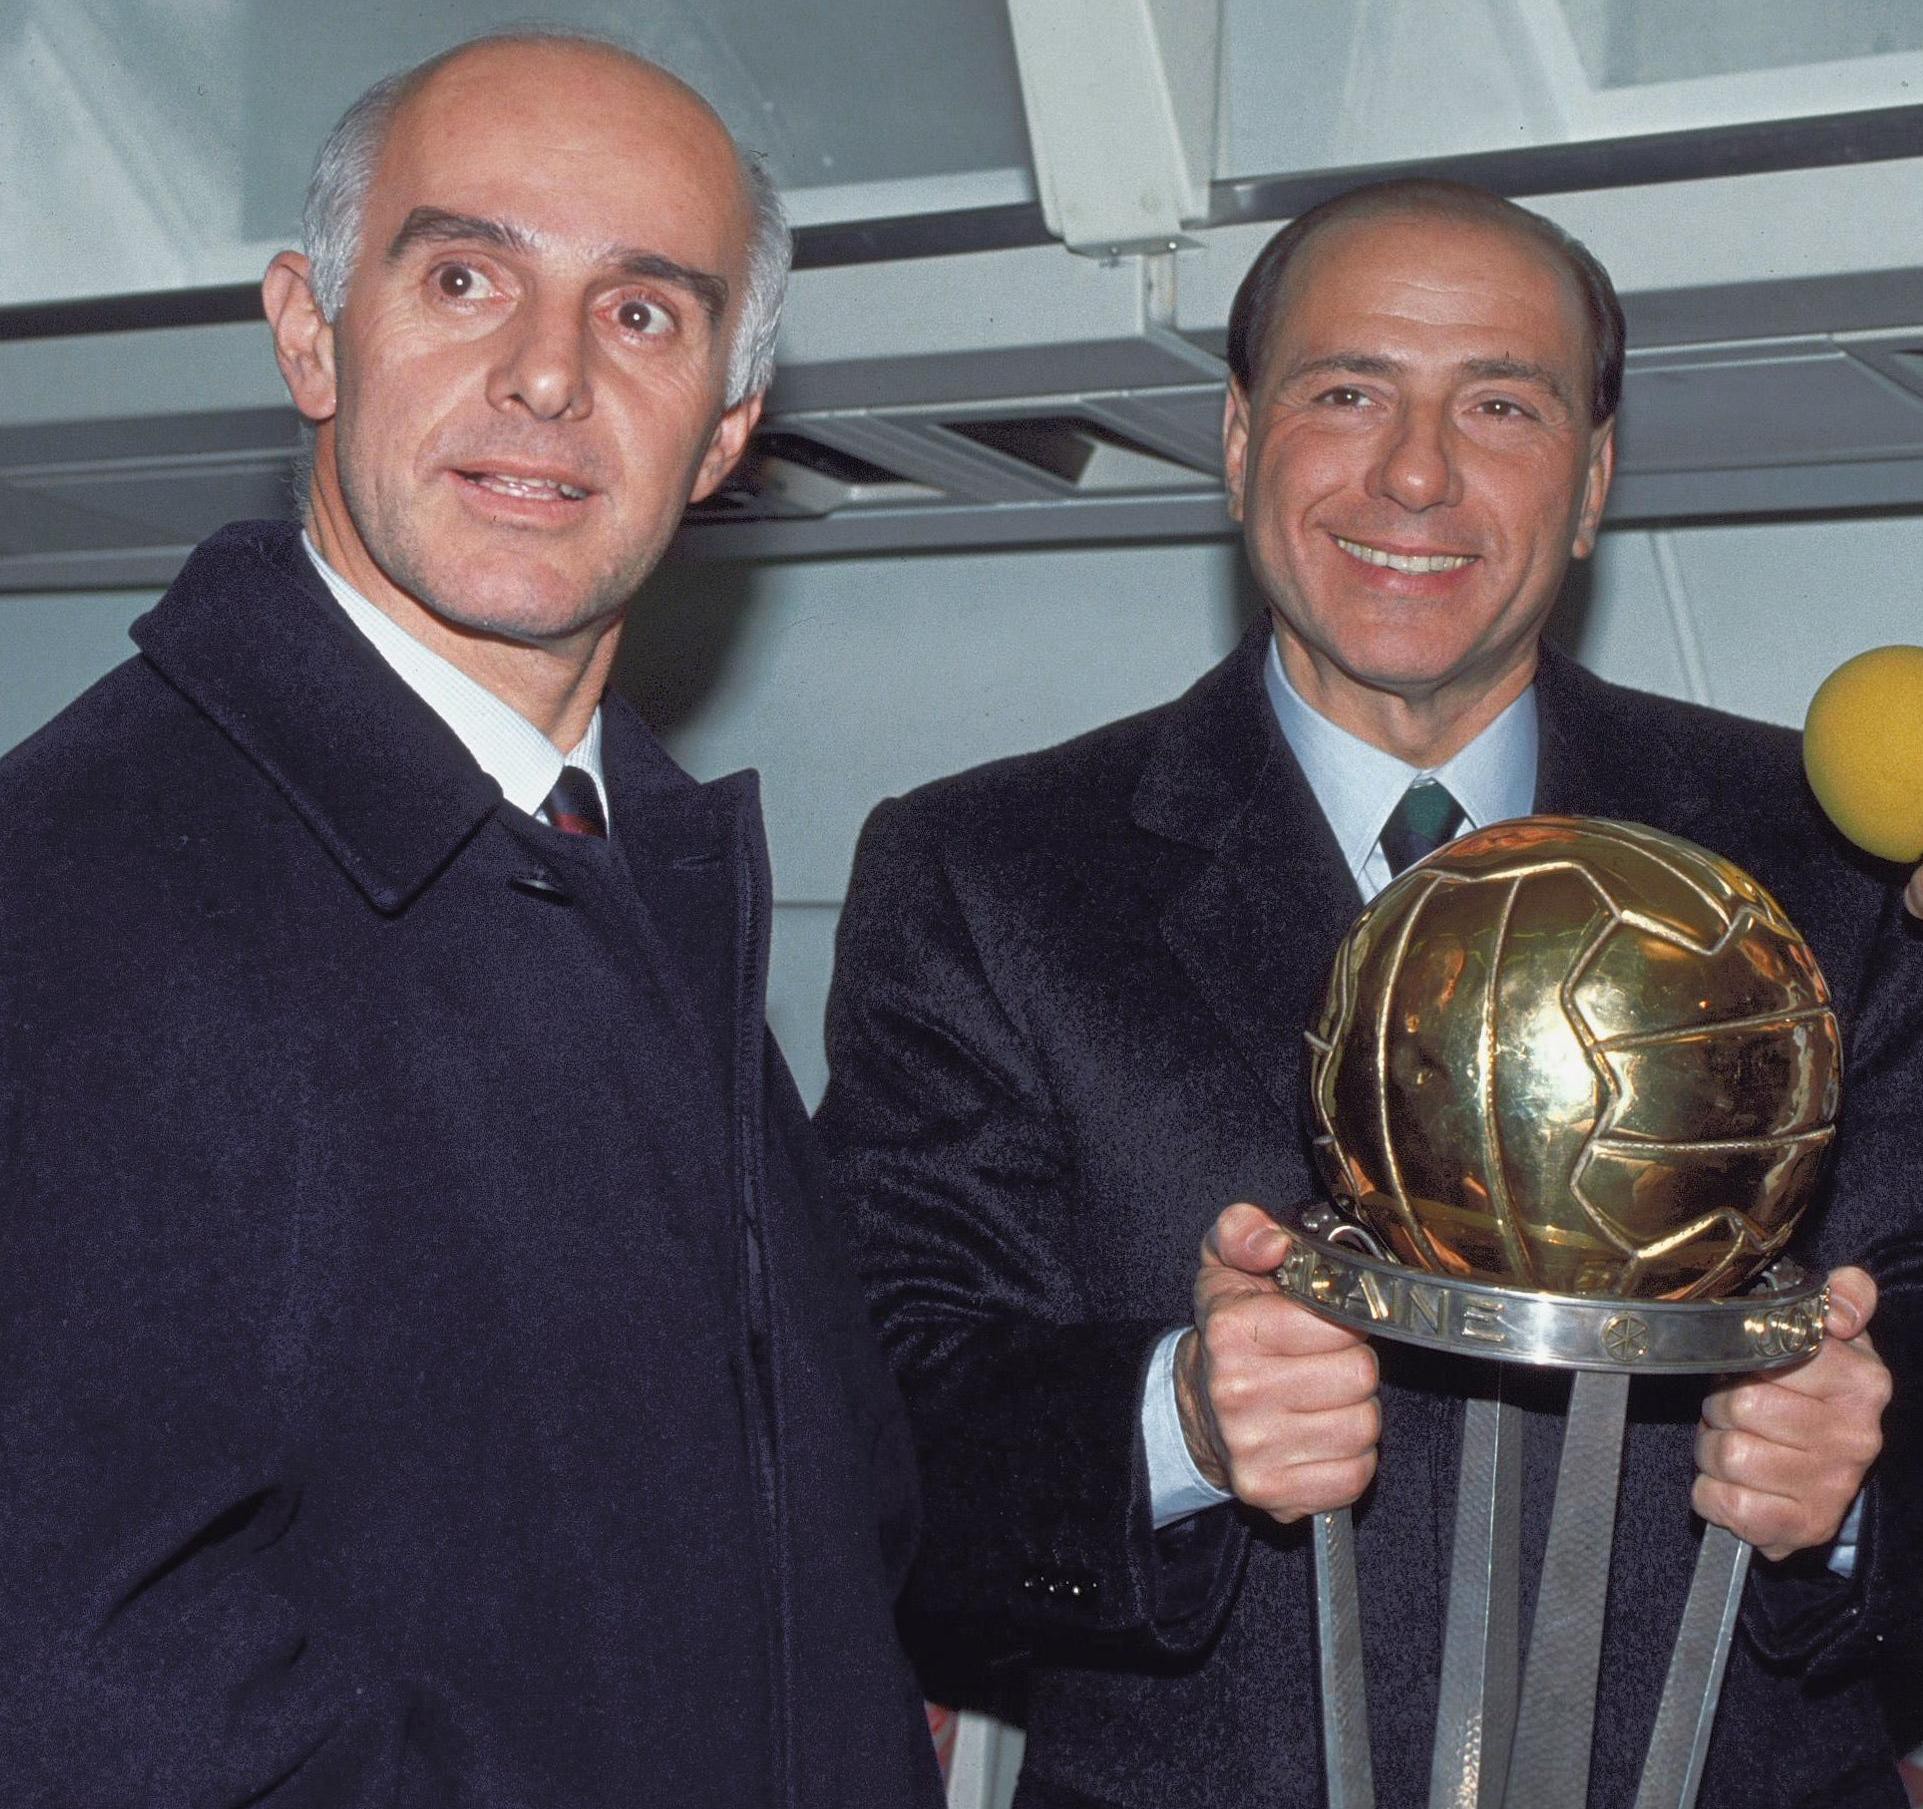 Những câu chuyện giờ mới kể về kỷ nguyên vàng của AC Milan (Kỳ 2)